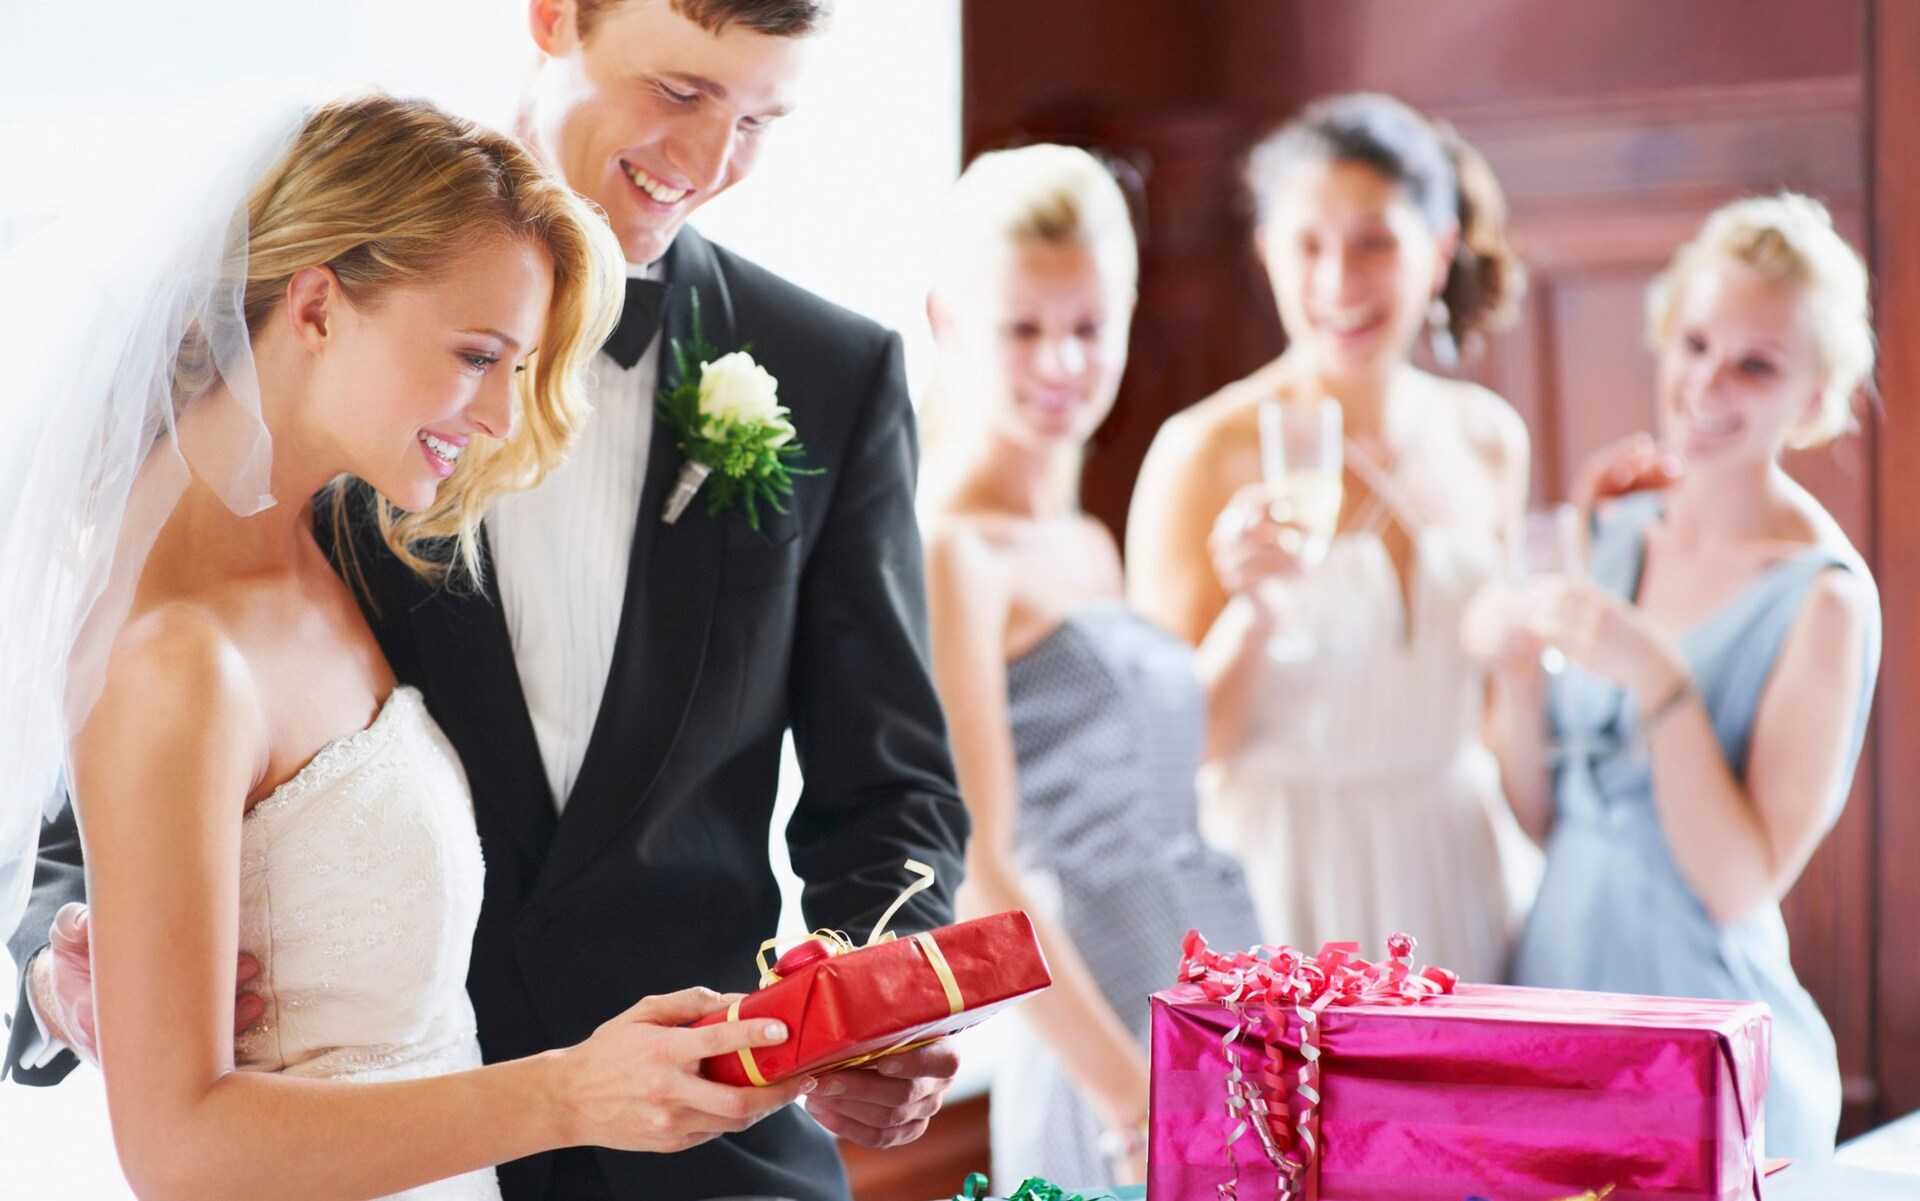 144 идеи - оригинальные и недорогие подарки на свадьбу